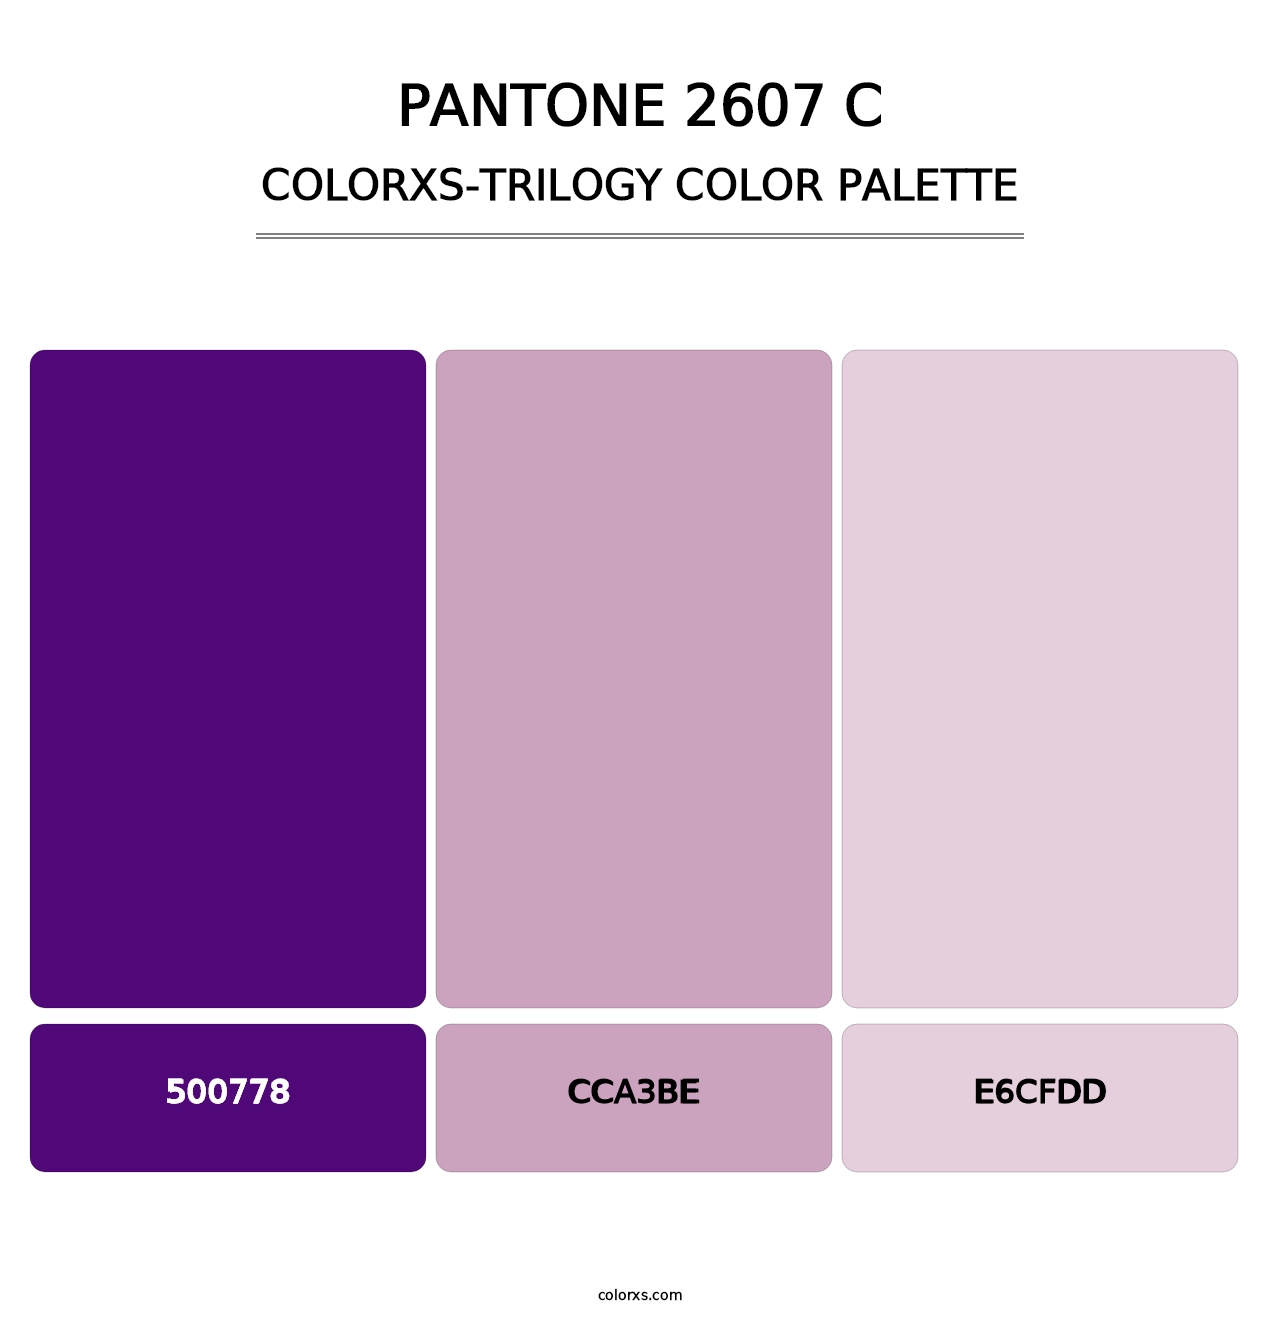 PANTONE 2607 C - Colorxs Trilogy Palette